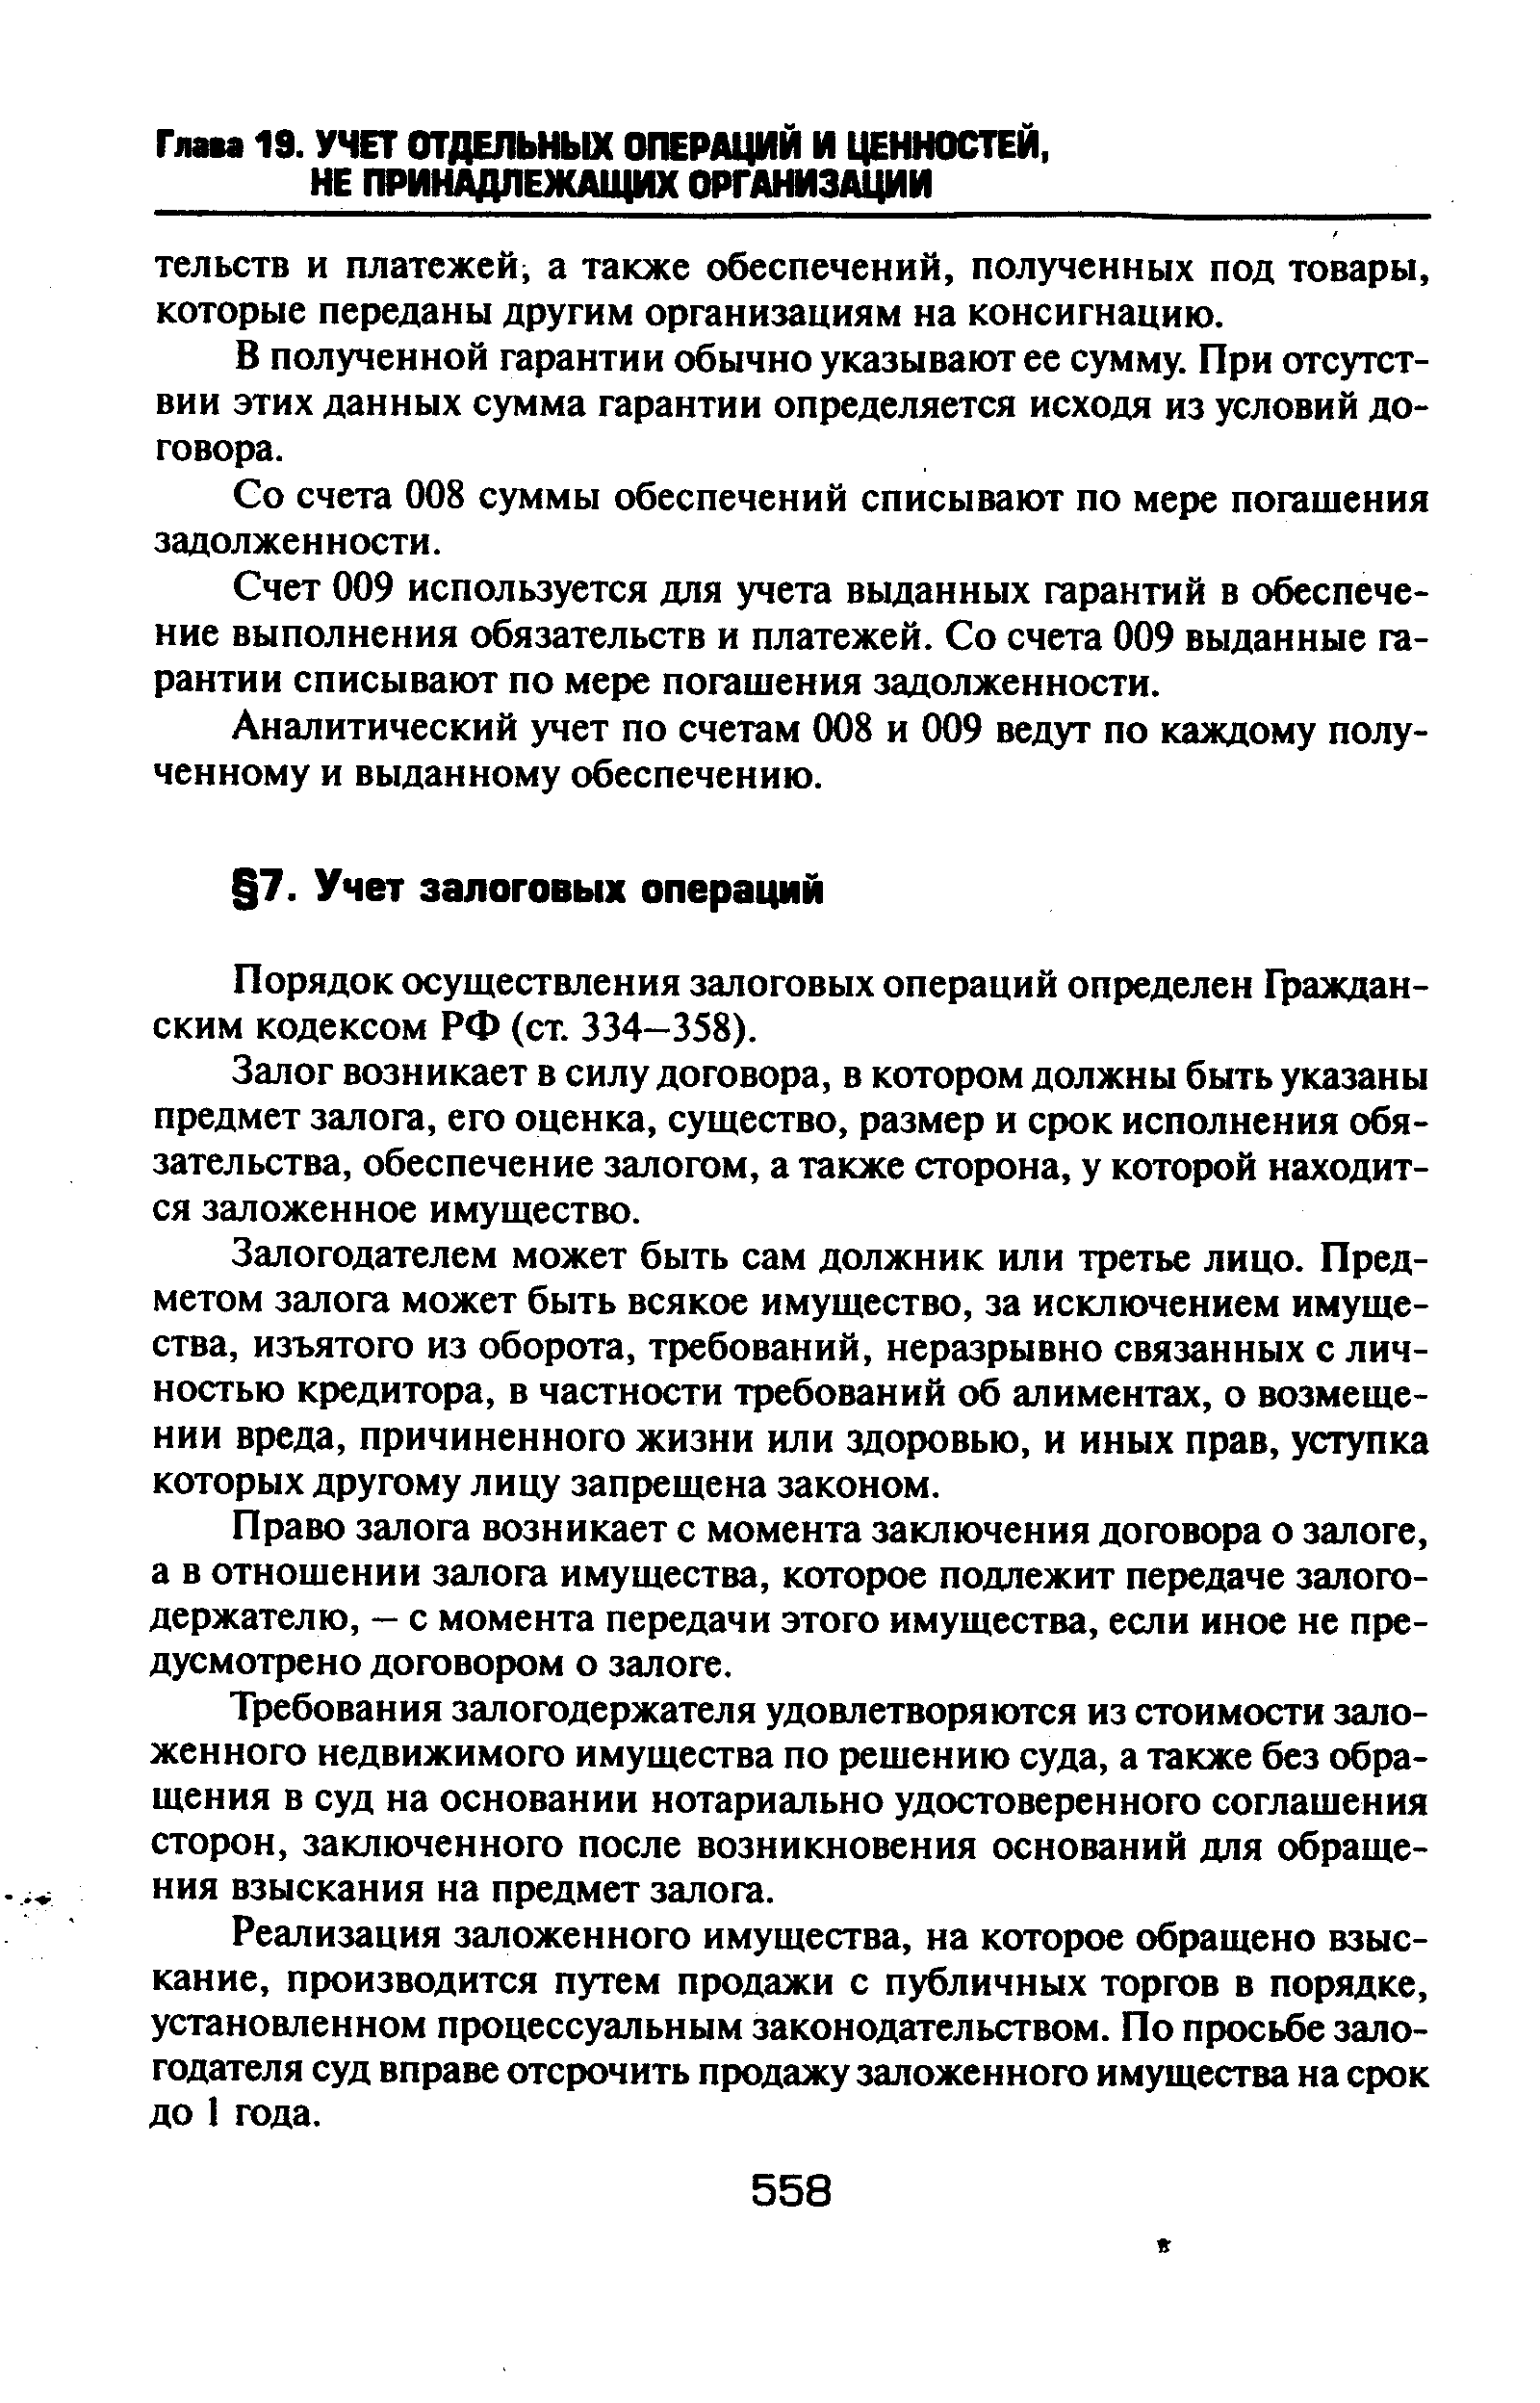 Порядок осуществления залоговых операций определен Гражданским кодексом РФ (ст. 334-358).
